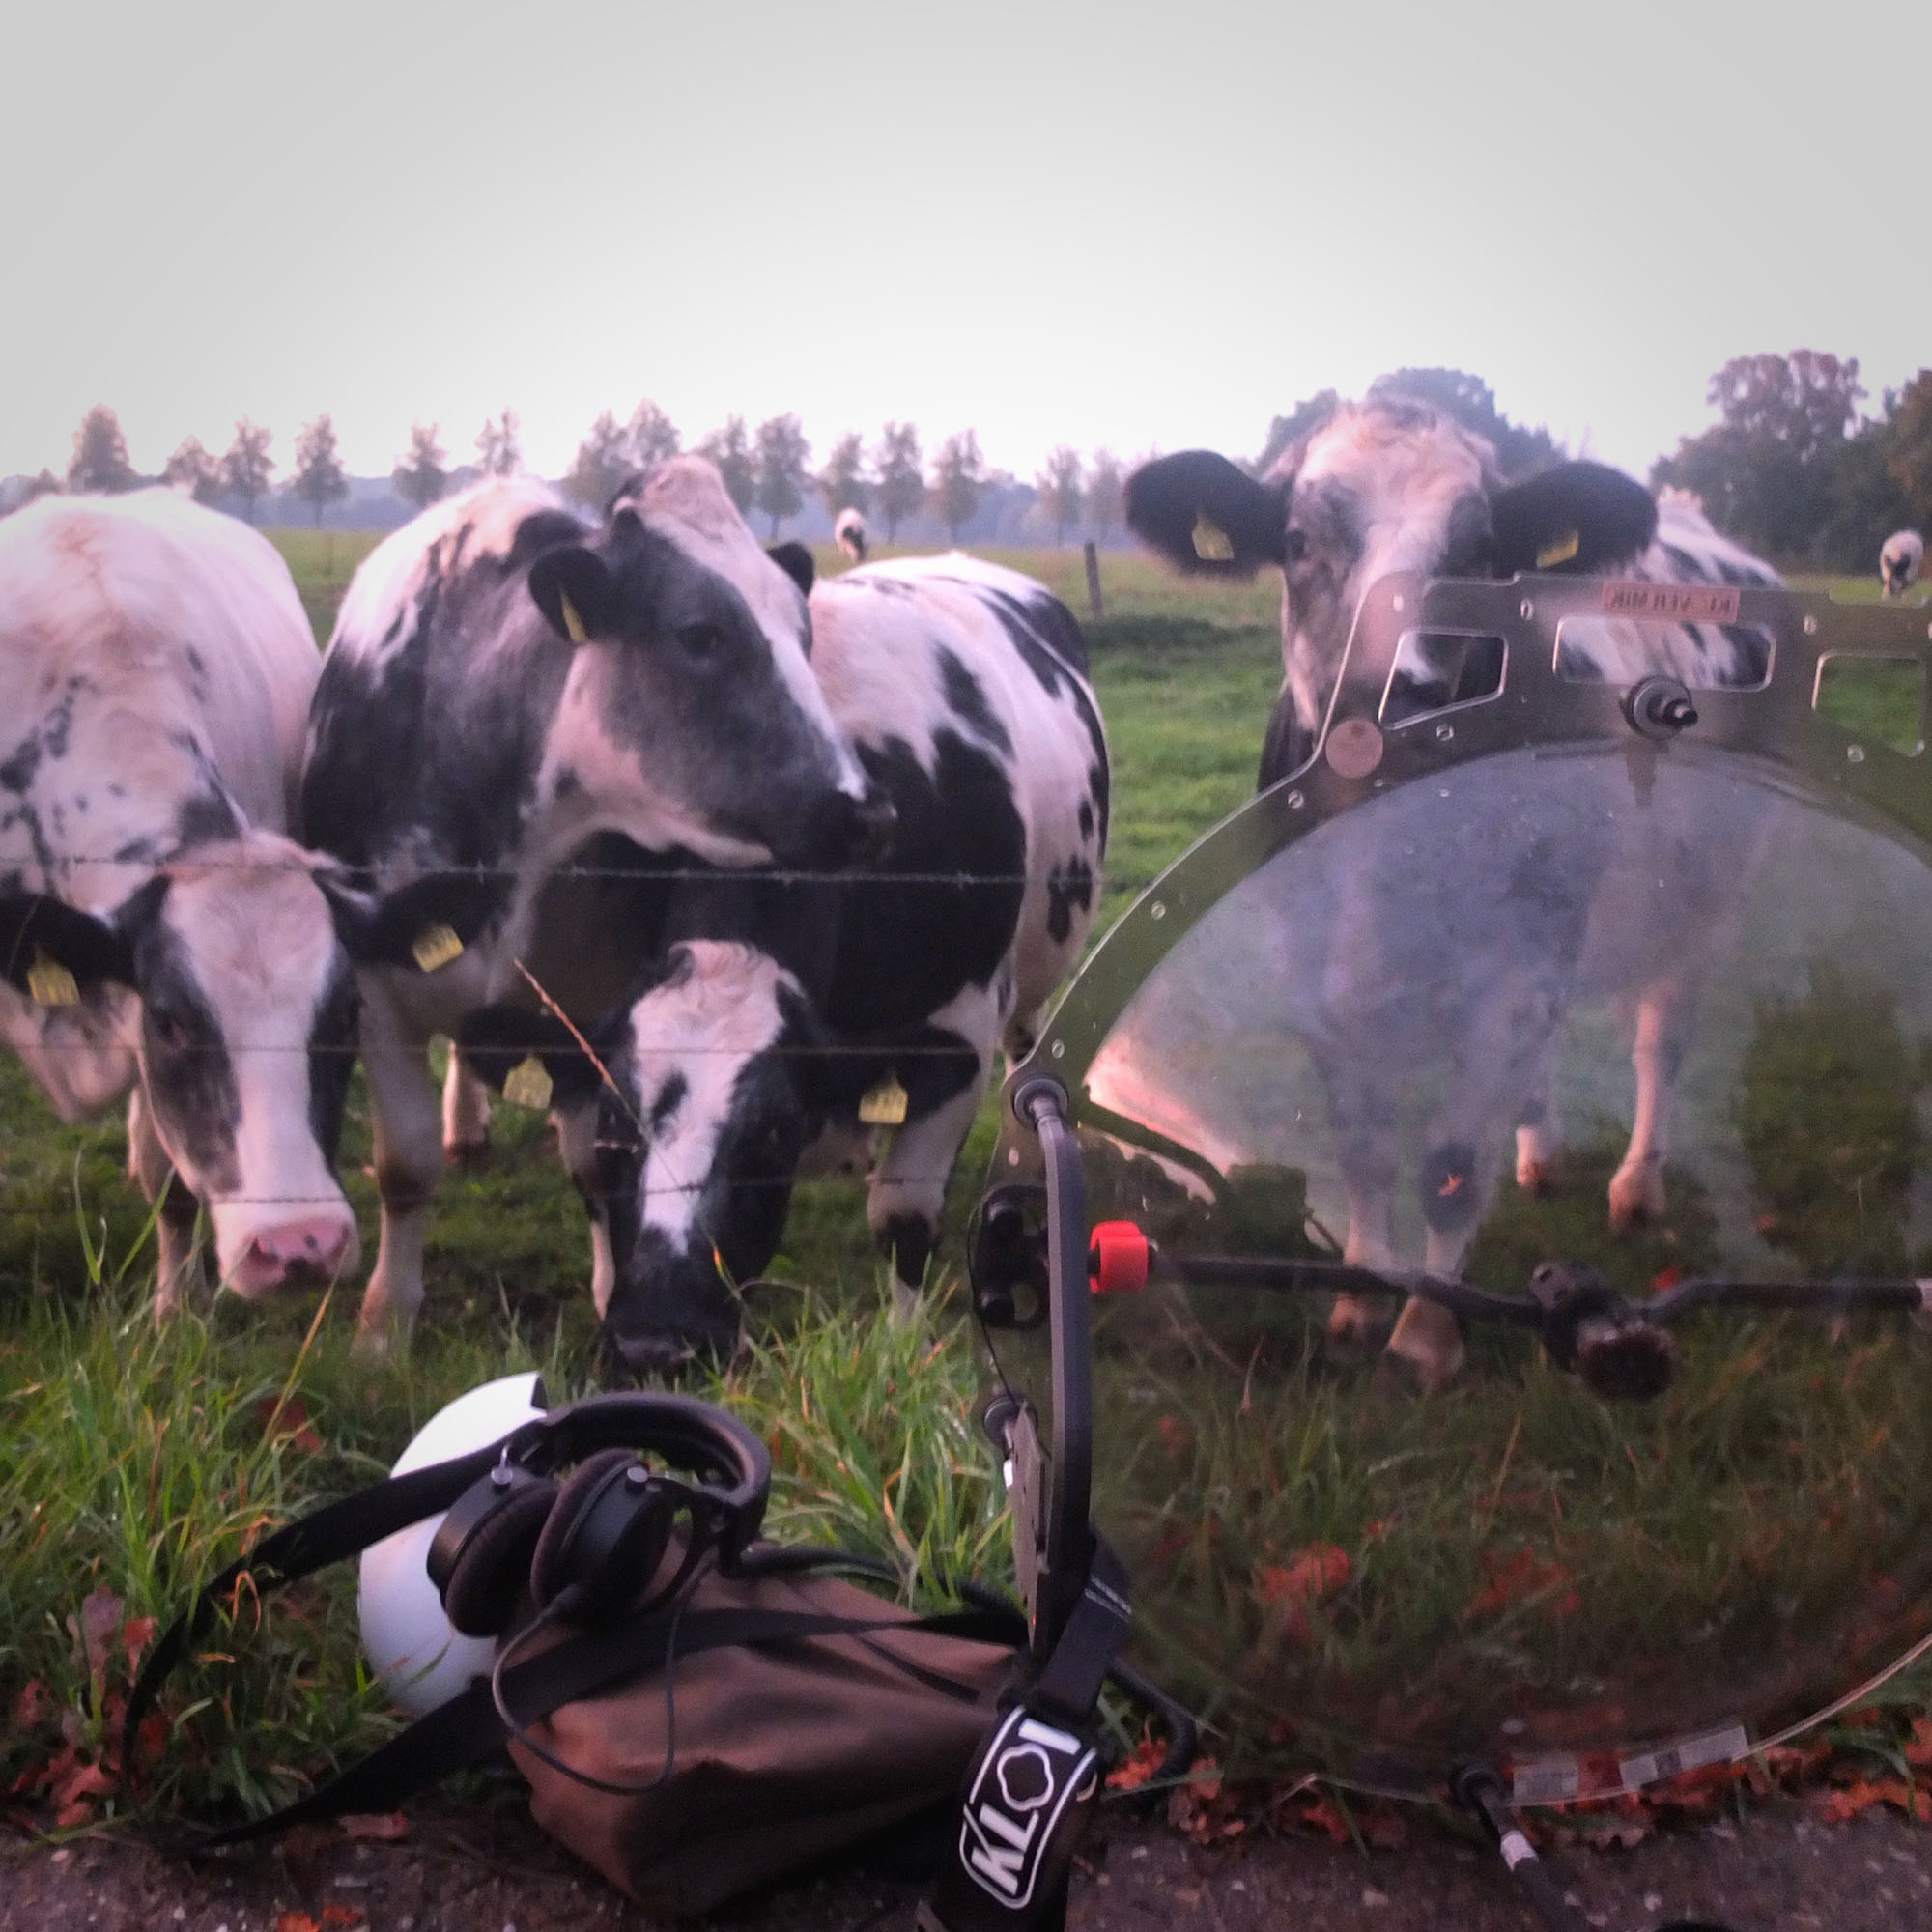 Kühe in Nordwalde, Foto von Nils Mosh